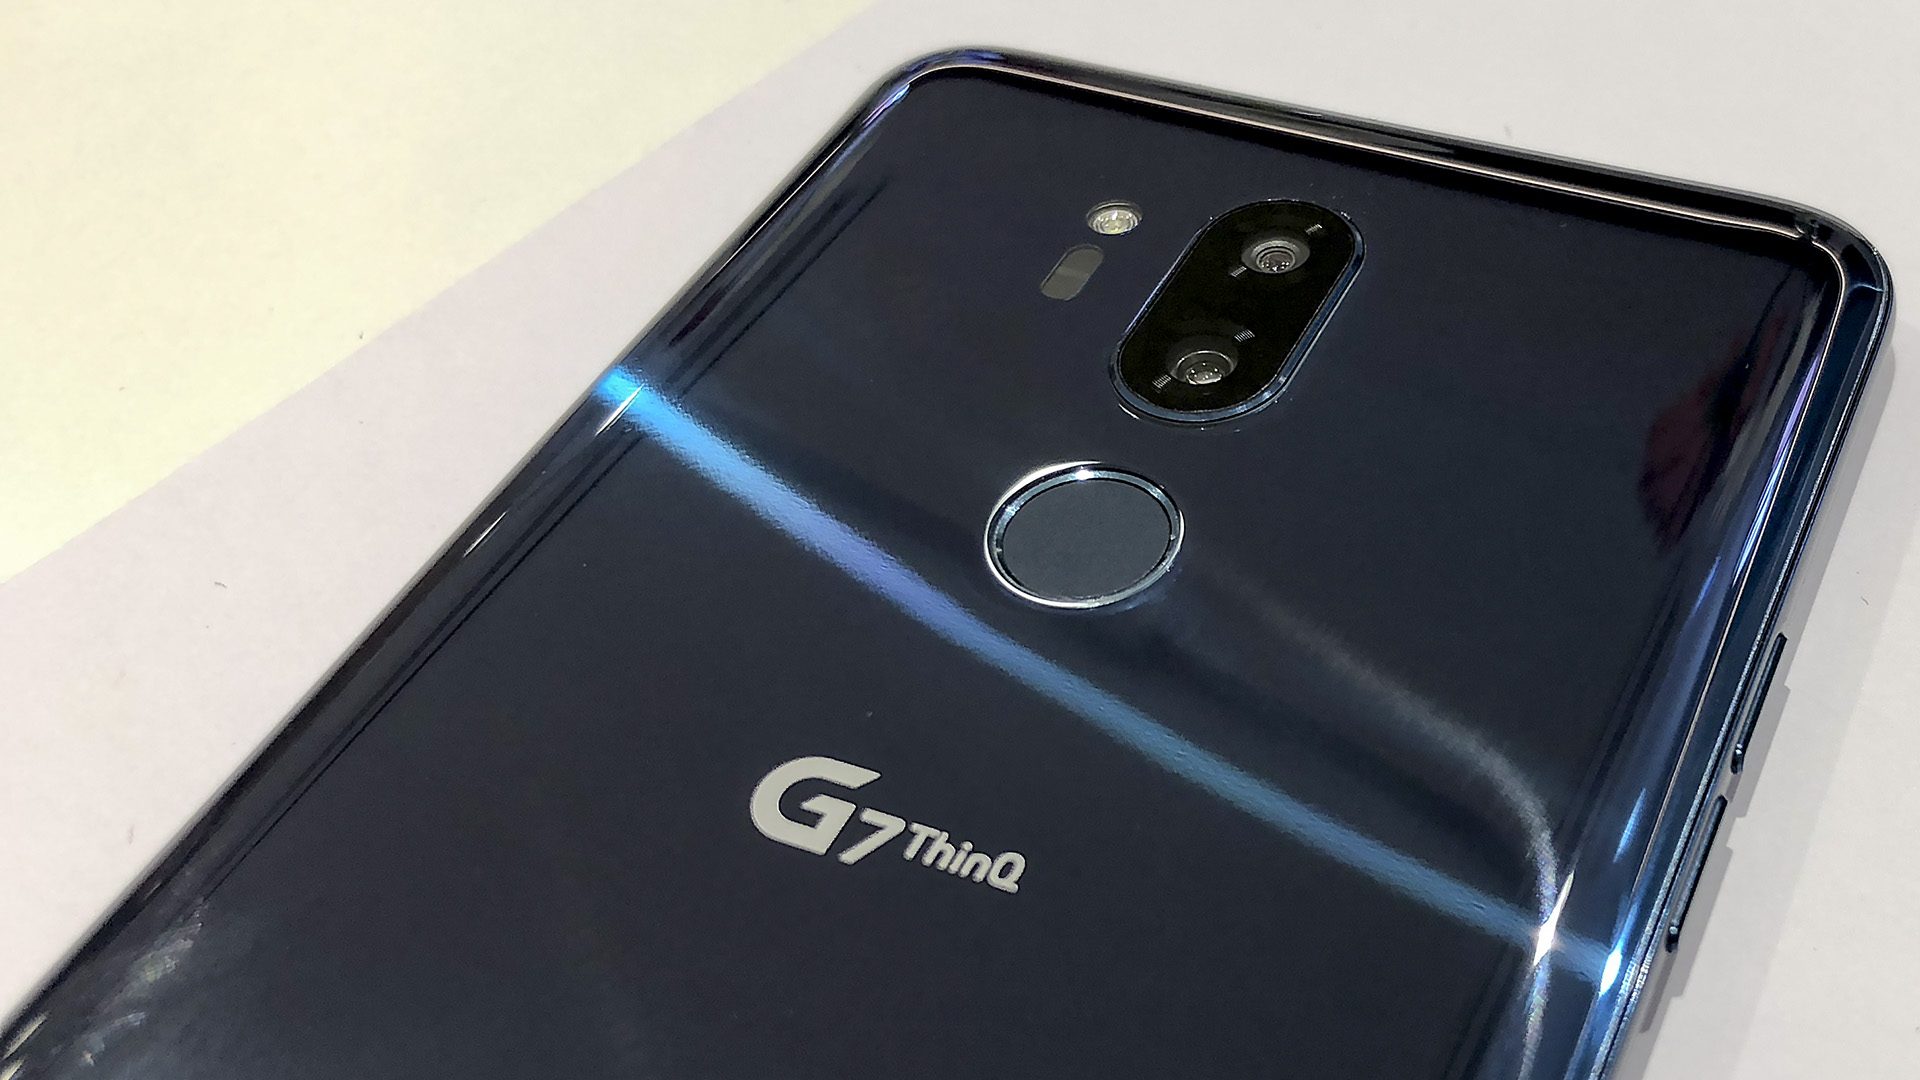 LG tillbaka med toppmodellen G7 ThinQ